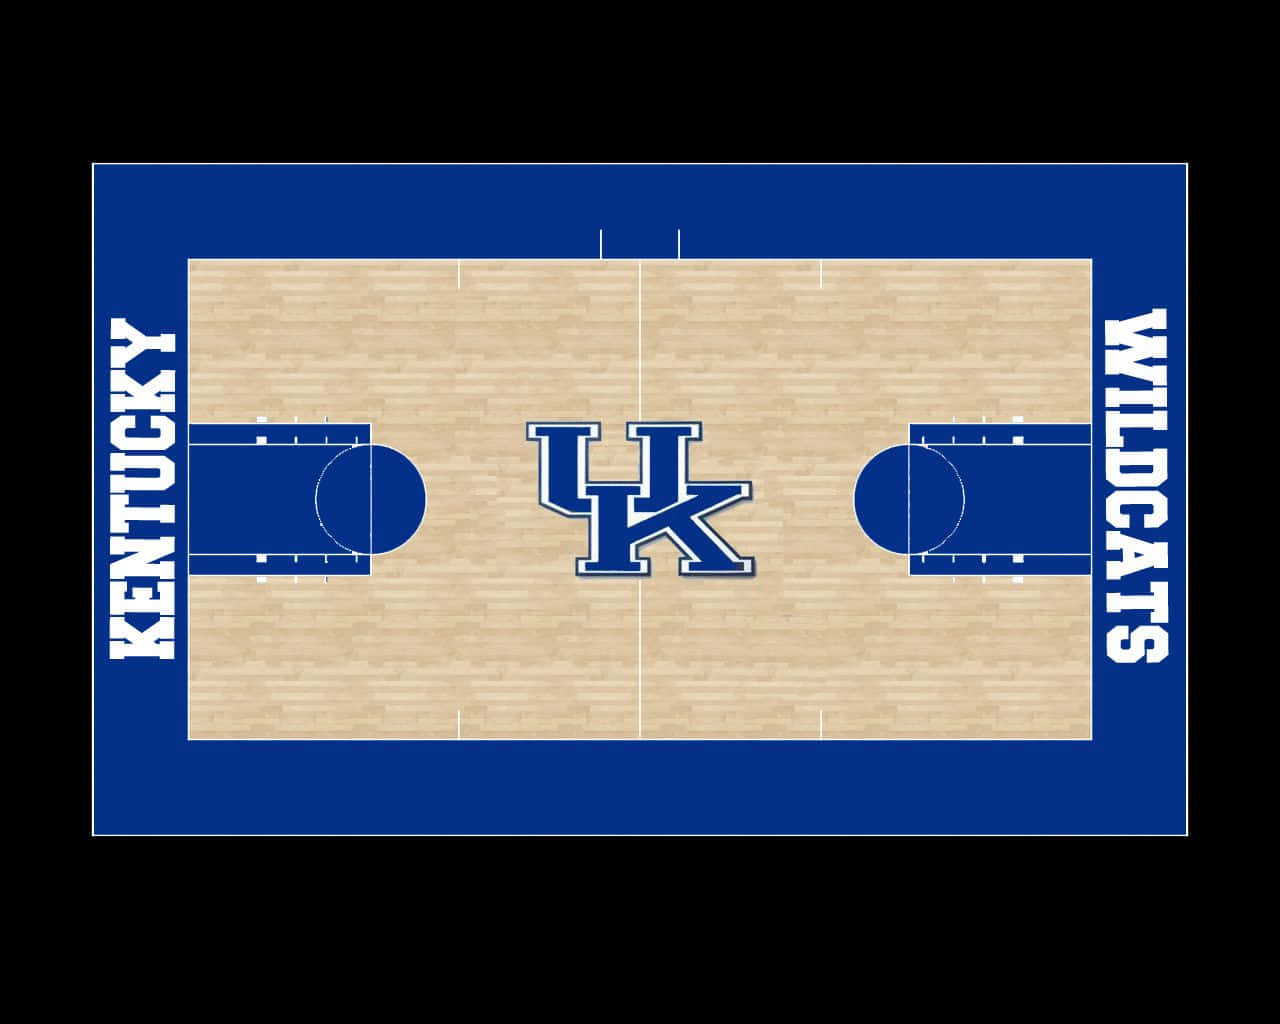 Kentucky Wildcats Basketball Court Layout Wallpaper